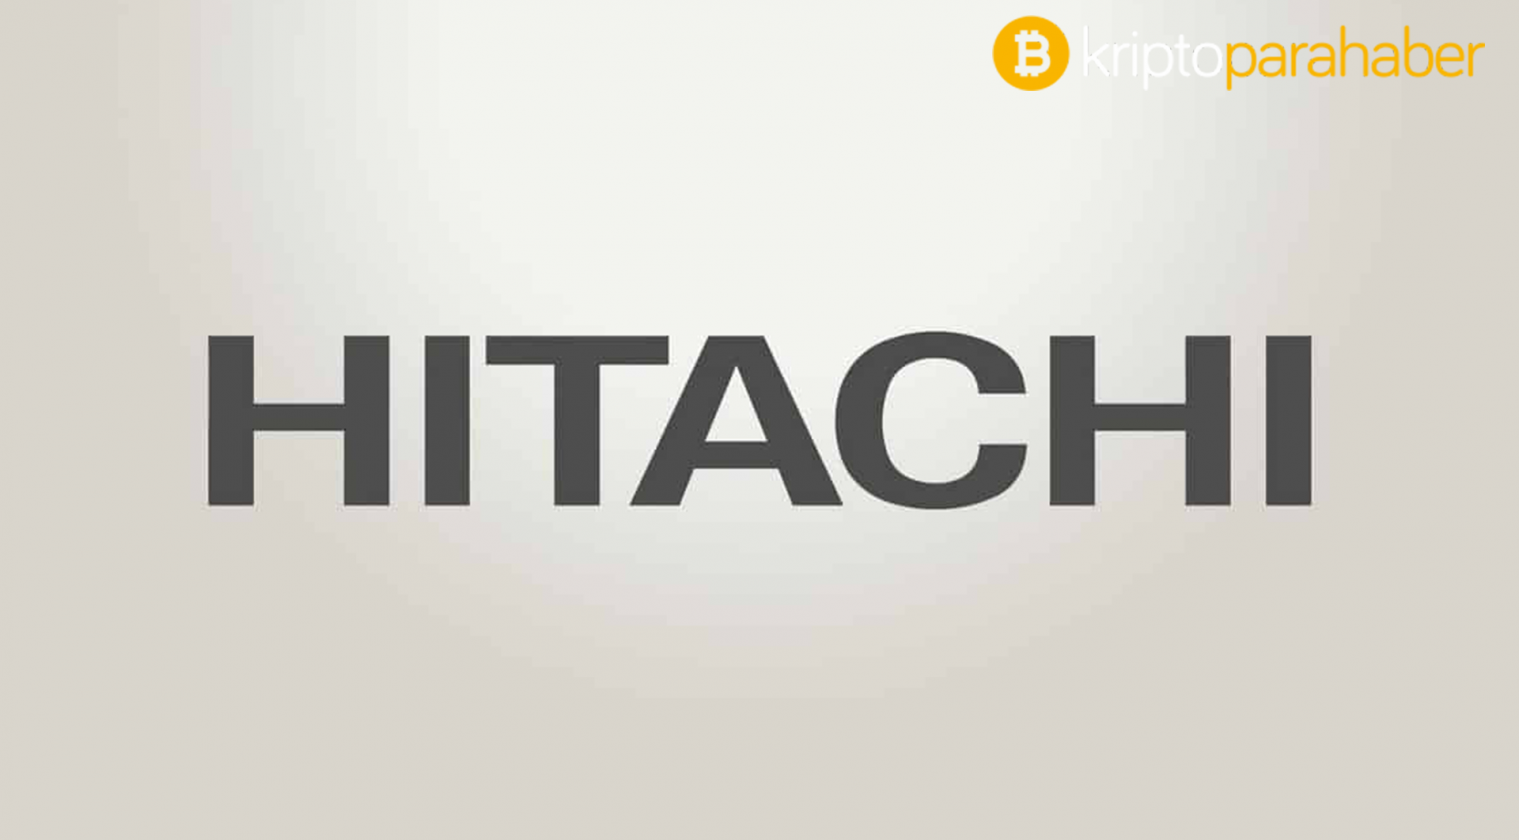 Teknoloji devi Hitachi, perakende endüstrisi için alışveriş yapmayı biraz daha kolaylaştıracak blockchain tabanlı ödeme sistemi geliştirdiğini açıkladı.